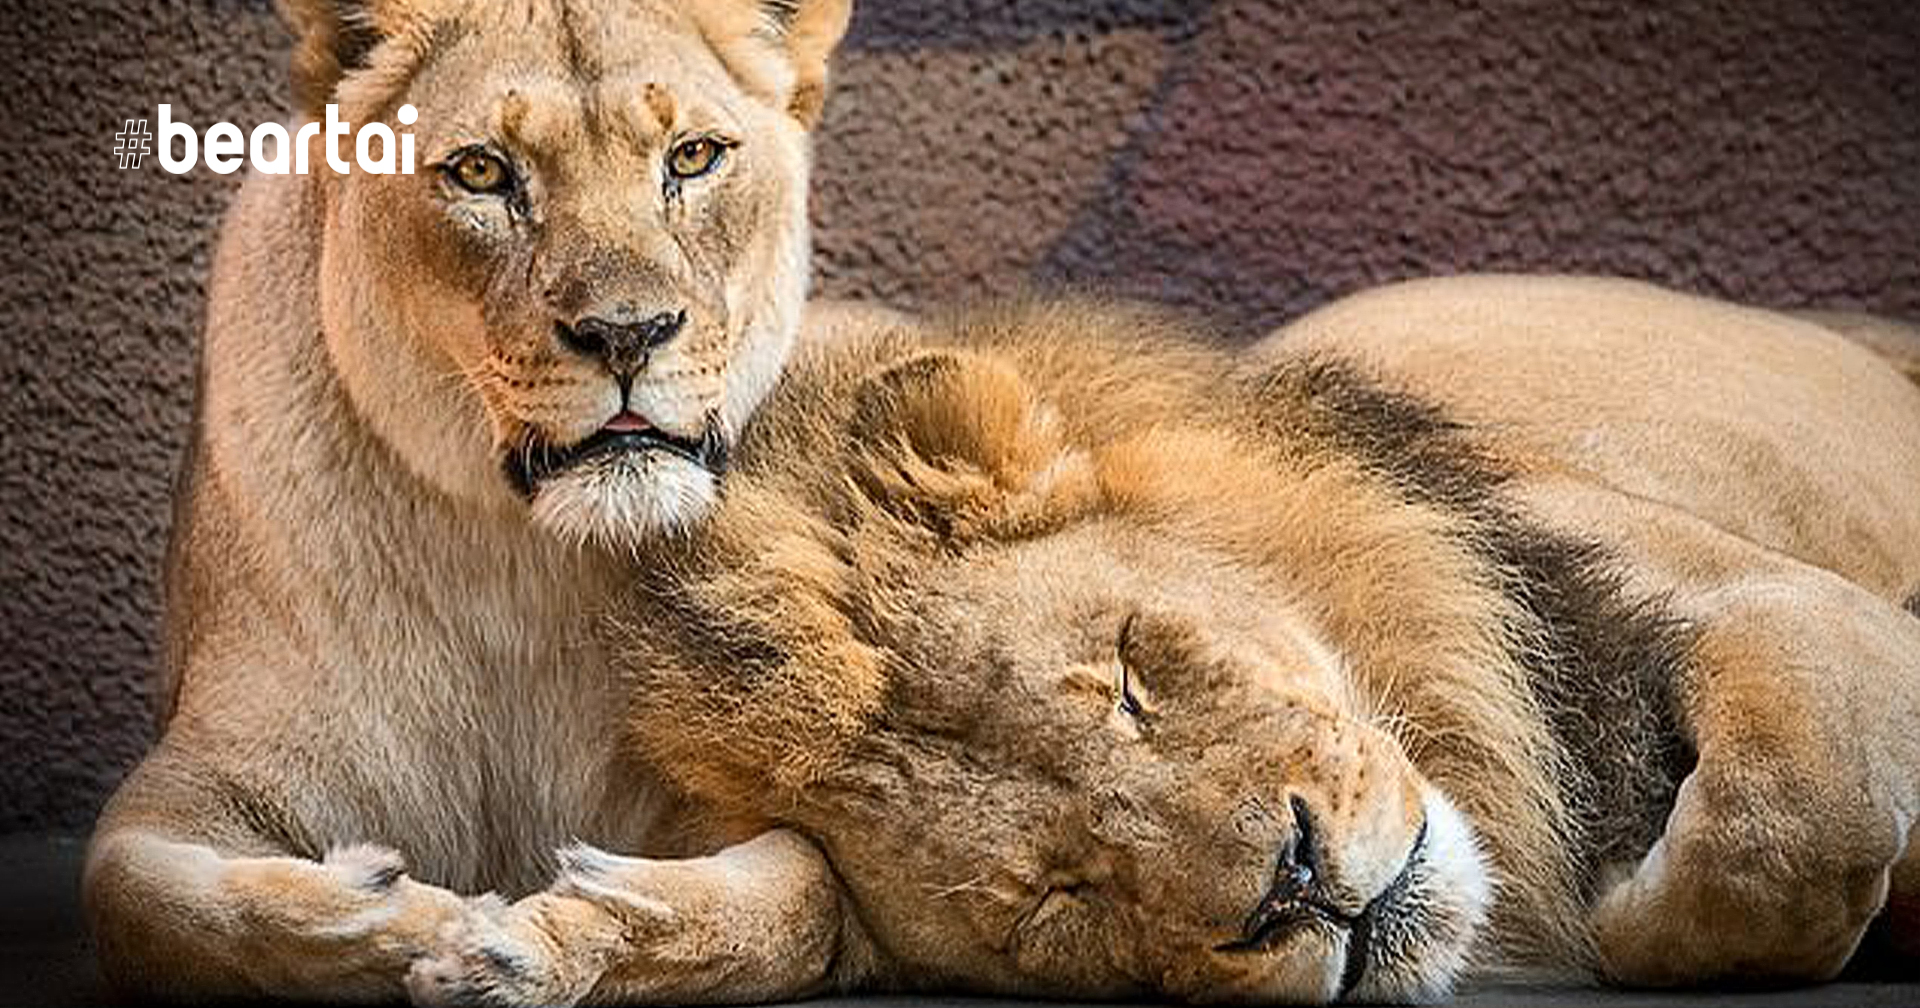 สวนสัตว์ลอสแองเจลิส ตัดสินใจการุณยฆาตสิงโตคู่รักสูงวัย เพื่อไม่ให้อีกตัวต้องอยู่โดดเดี่ยว